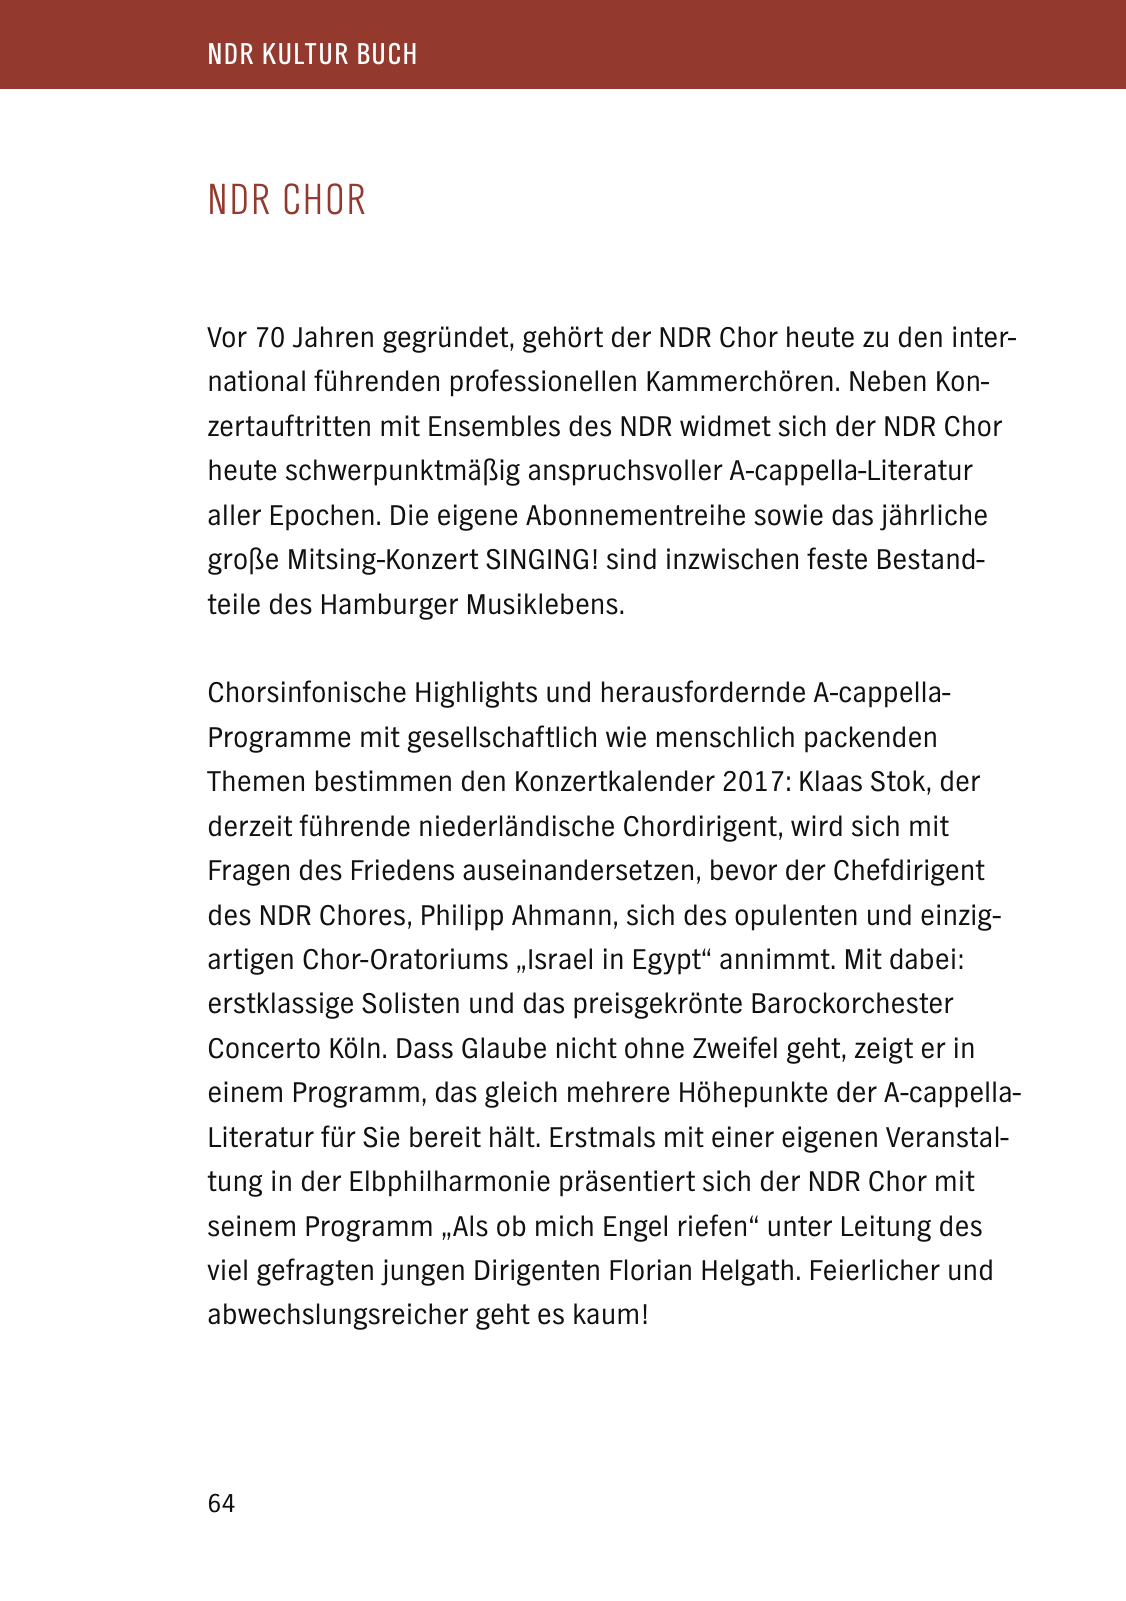 Vorschau NDR Kultur Buch 2017 Seite 66